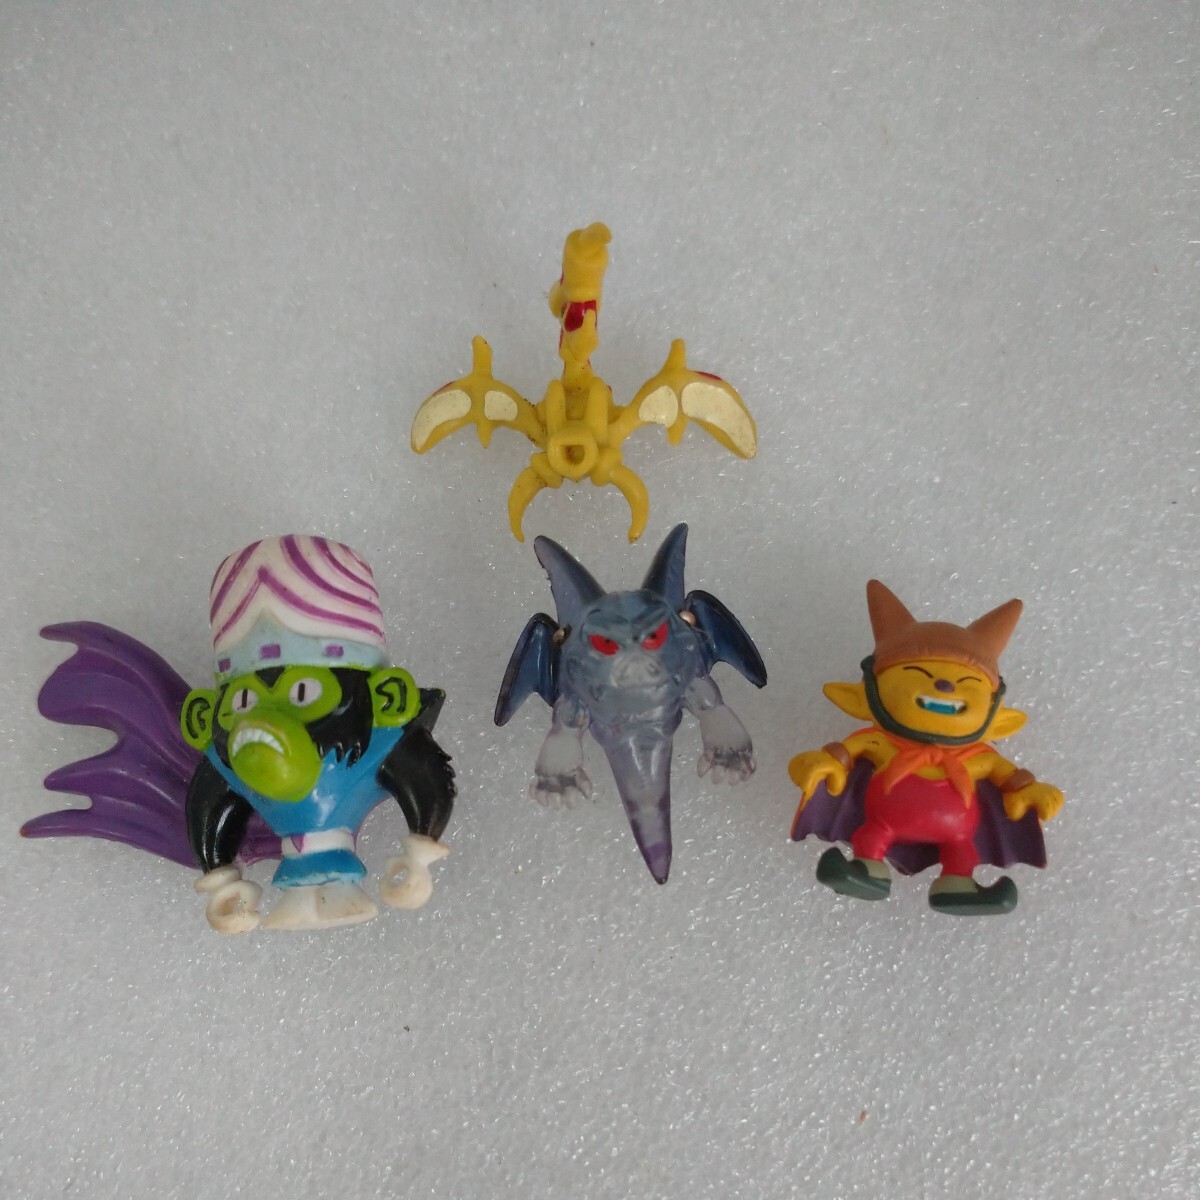 [ продажа комплектом ] Dragon Quest прочее миниатюра фигурка игрушка украшение 